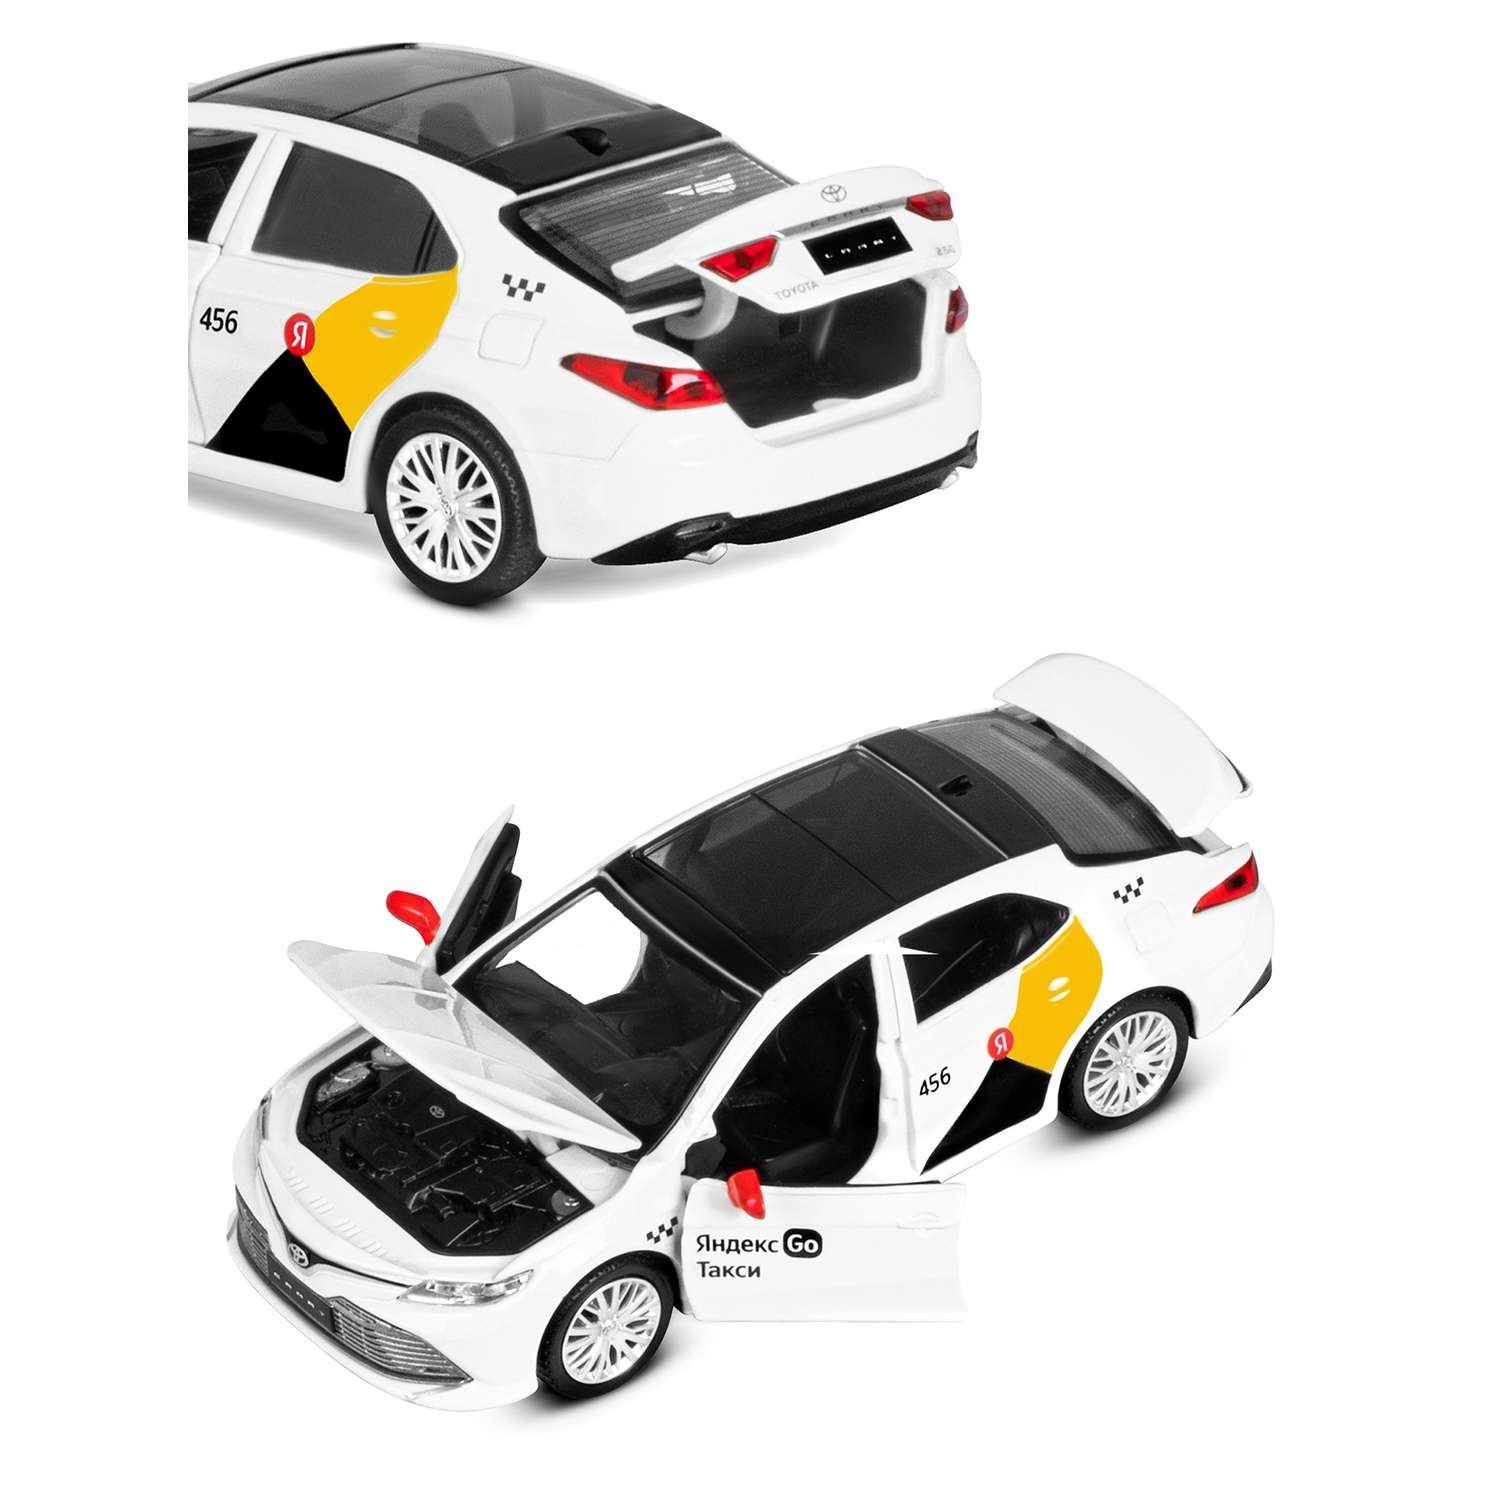 Машинка металлическая Яндекс GO 1:34 Toyota Camry белый инерция Озвучено Алисой JB1251483 - фото 10